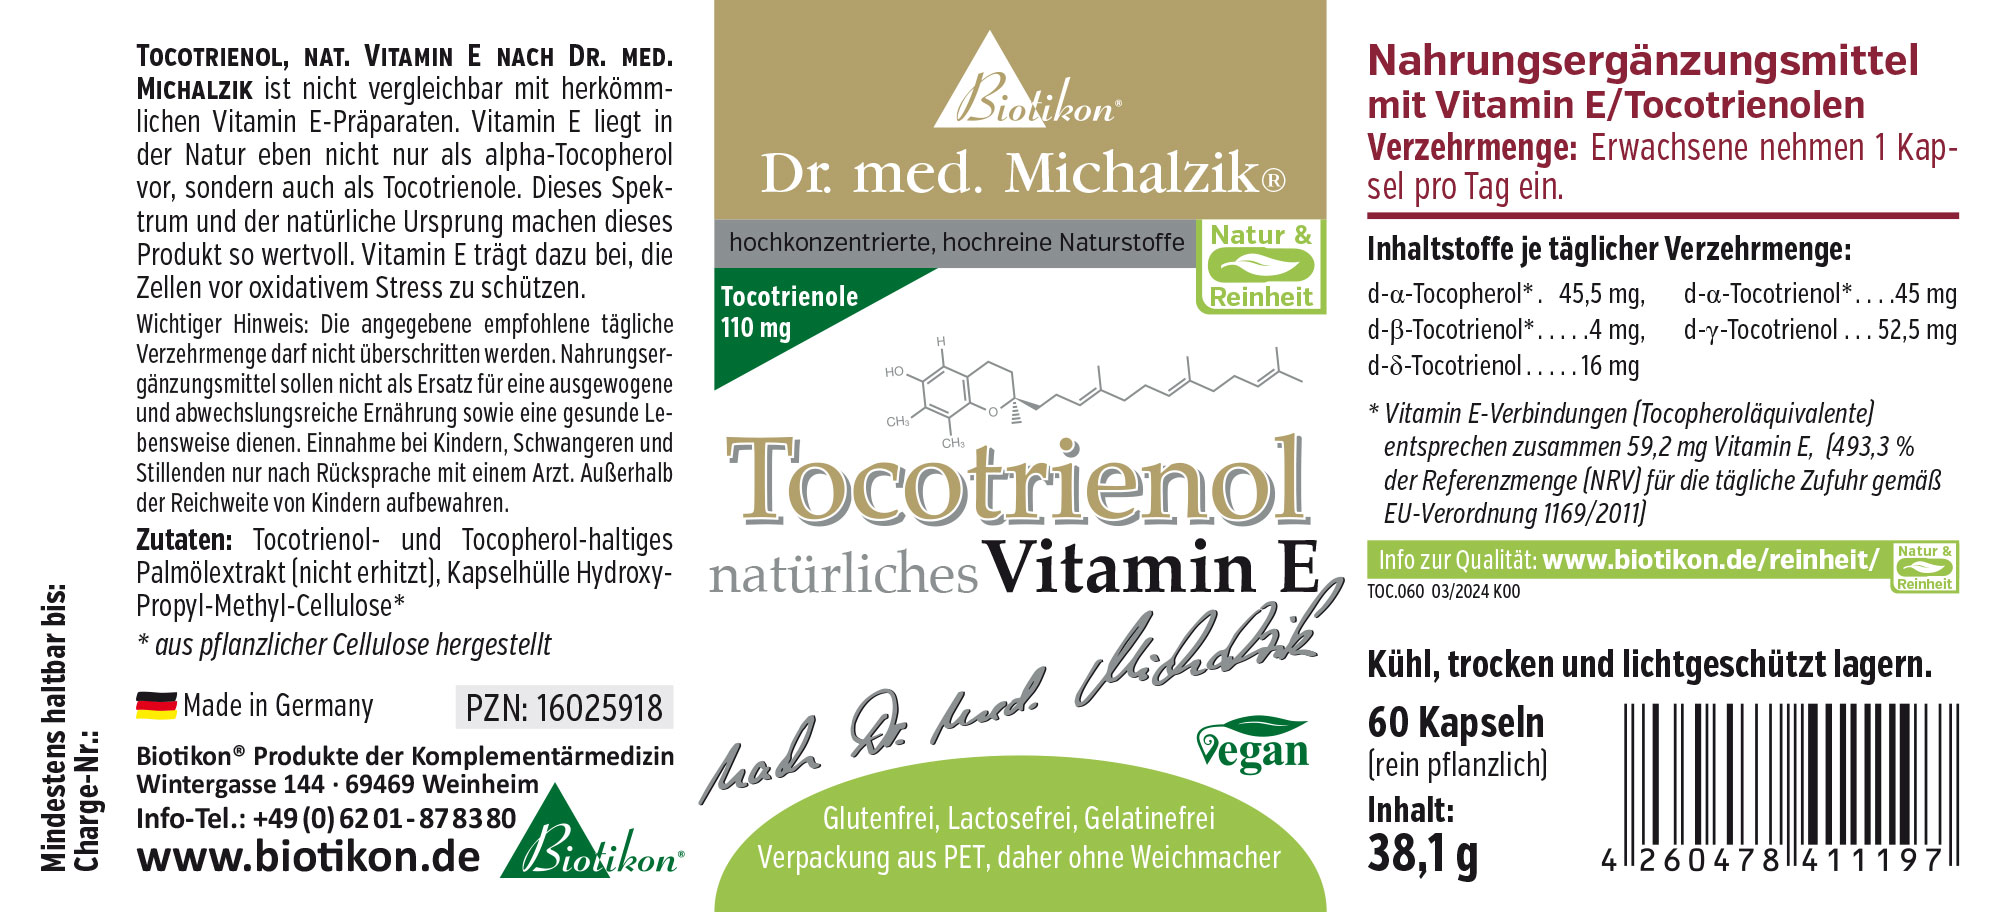 Tocotrienolo, nat. vitamina E